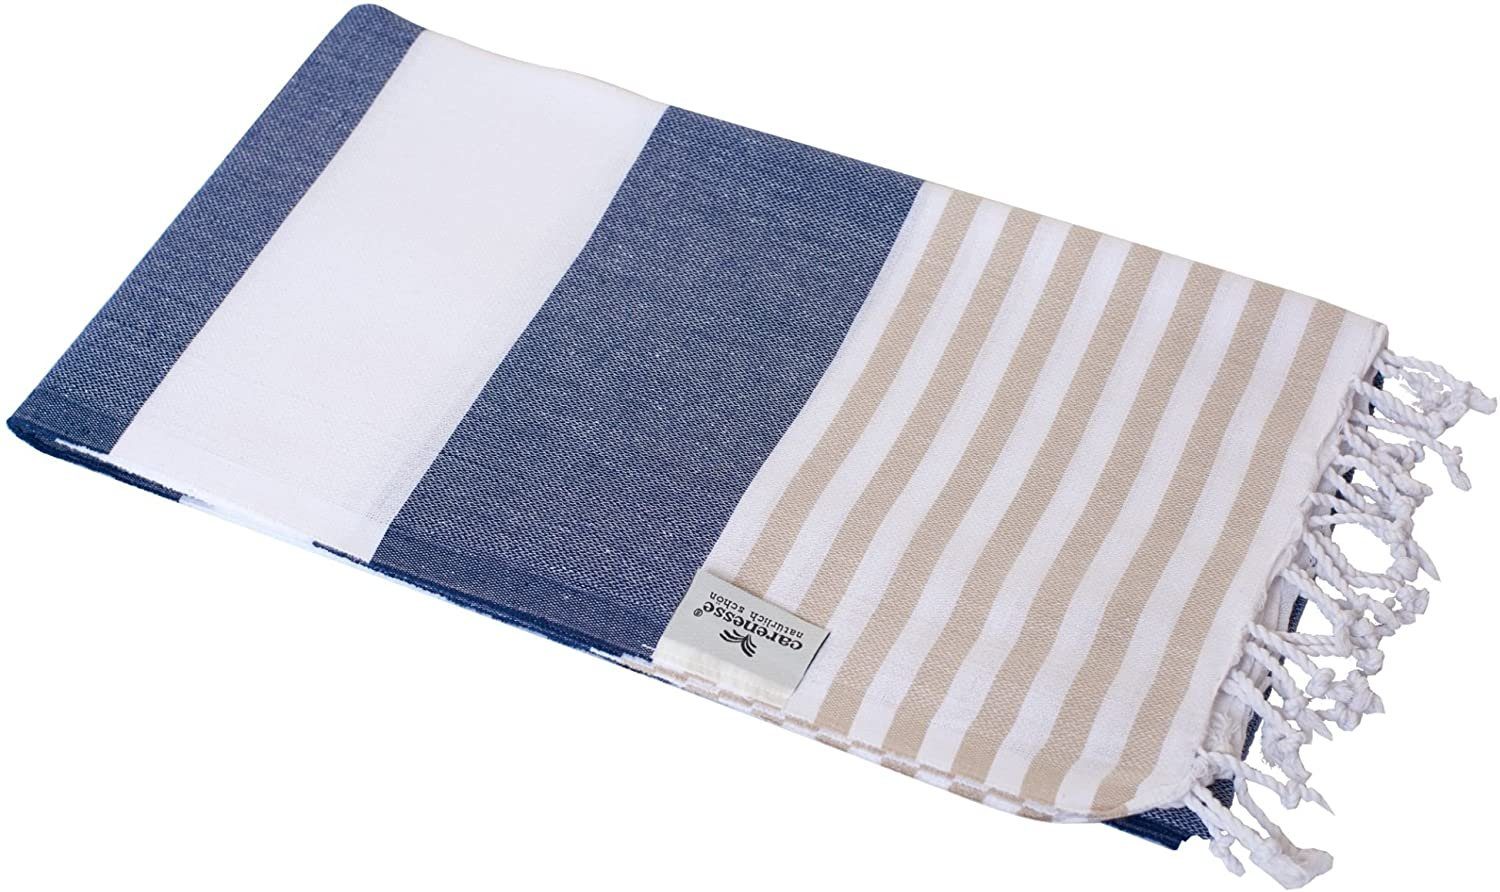 Carenesse Strandtuch Hamamtuch Tommy 100 x 180 cm Hamam Handtuch Baumwolle blau weiß beige, Baumwolle, breit & saugfähig Pestemal Fouta I Saunatuch Strandtuch Camping Towel | Strandtücher